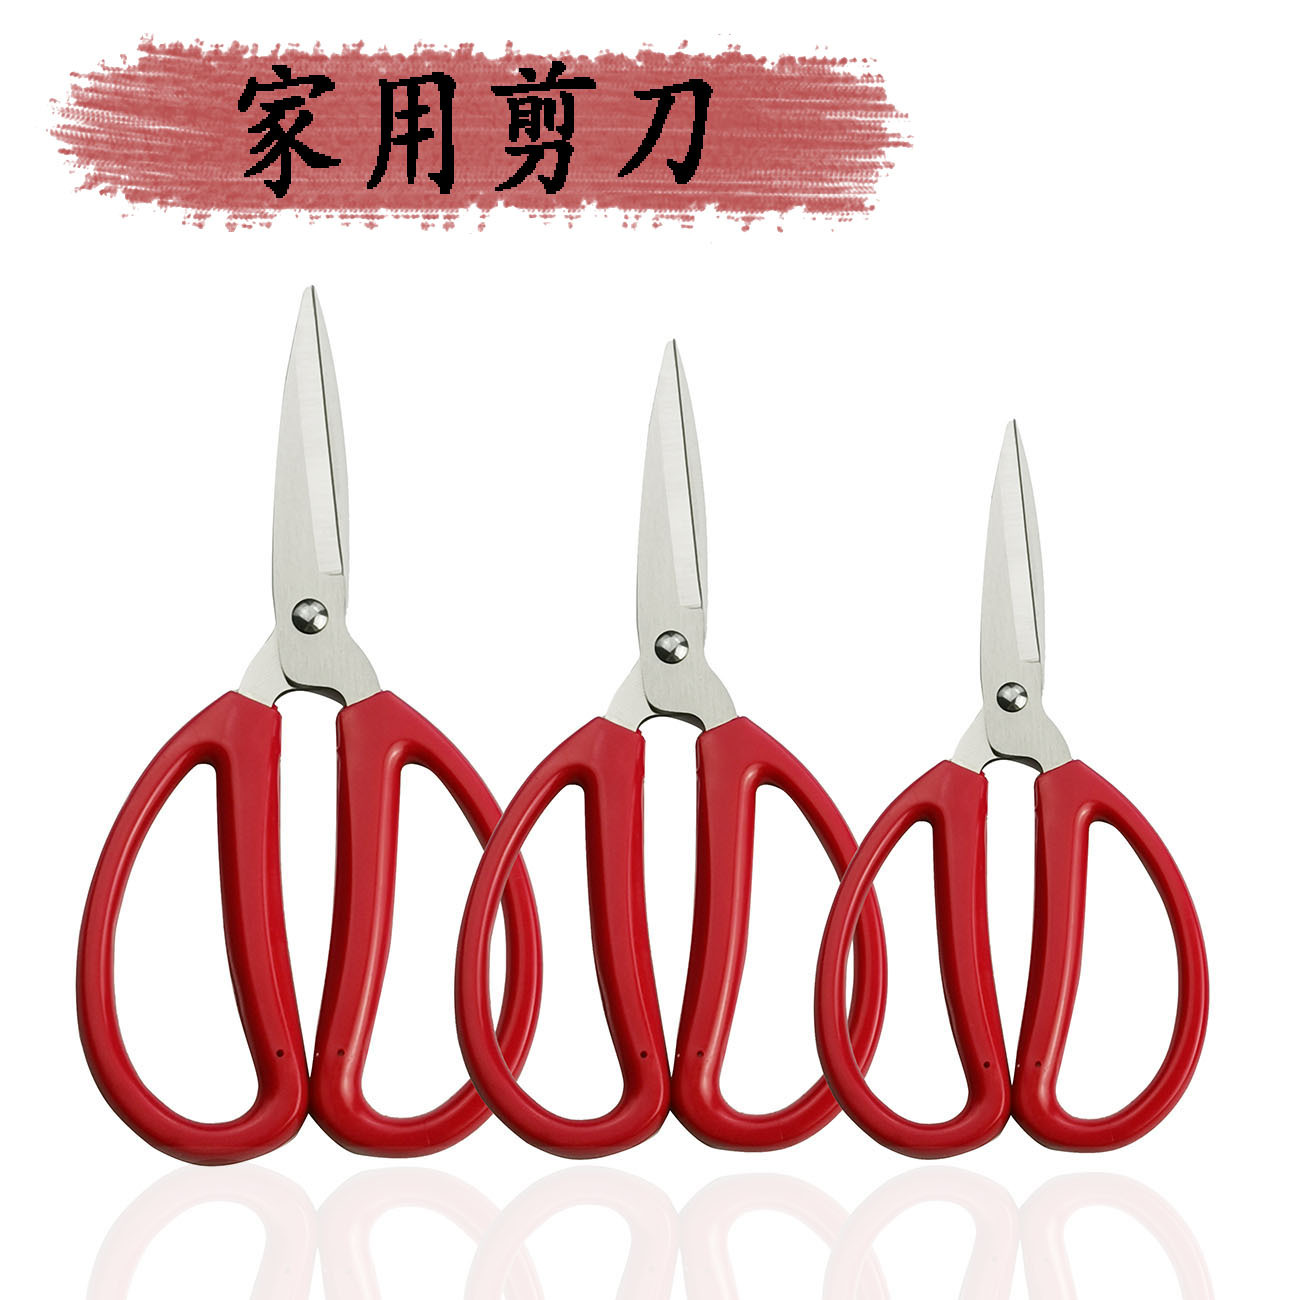 現貨供應傳統 紅色家用剪 辦公剪 裁縫剪 不鏽鋼線頭剪刀